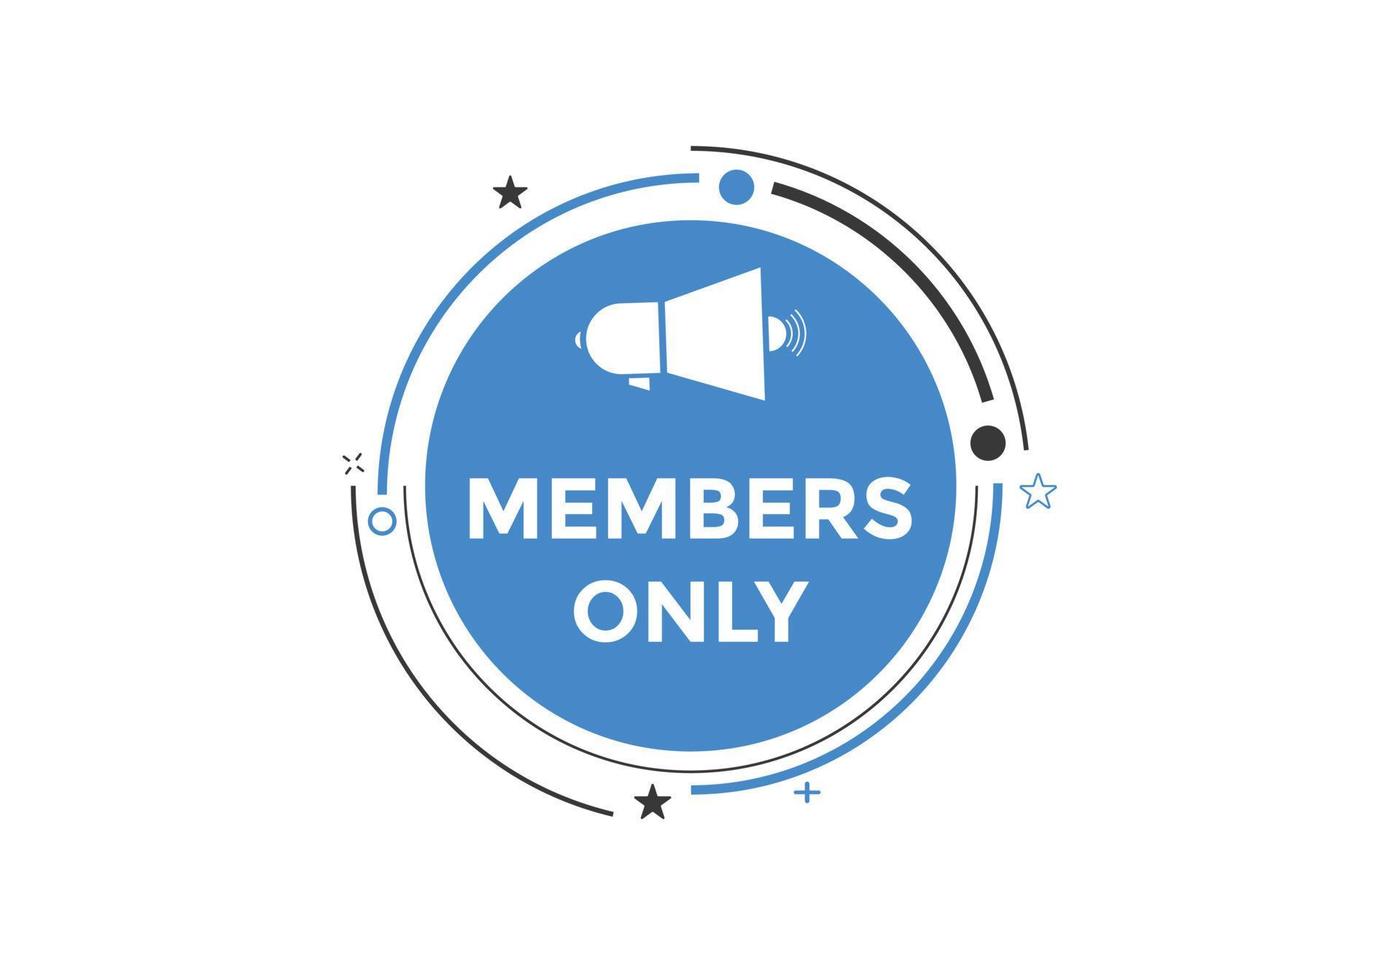 bouton réservé aux membres. bulle de dialogue réservée aux membres. modèle web de texte réservé aux membres vecteur